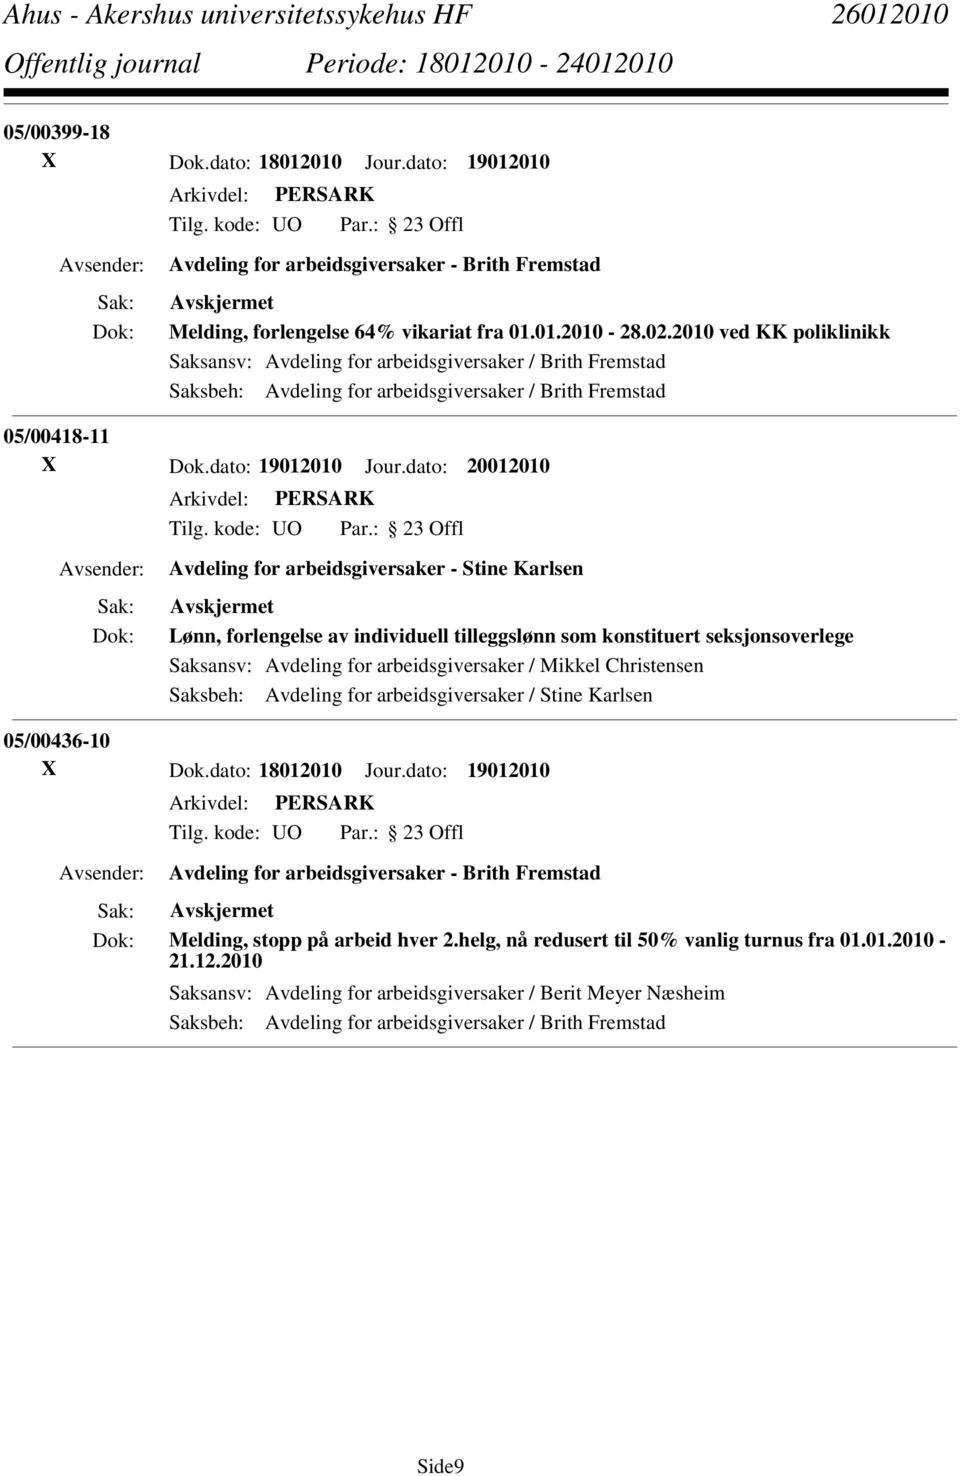 dato: 20012010 Avdeling for arbeidsgiversaker - Stine Karlsen Lønn, forlengelse av individuell tilleggslønn som konstituert seksjonsoverlege Saksansv: Avdeling for arbeidsgiversaker / Mikkel